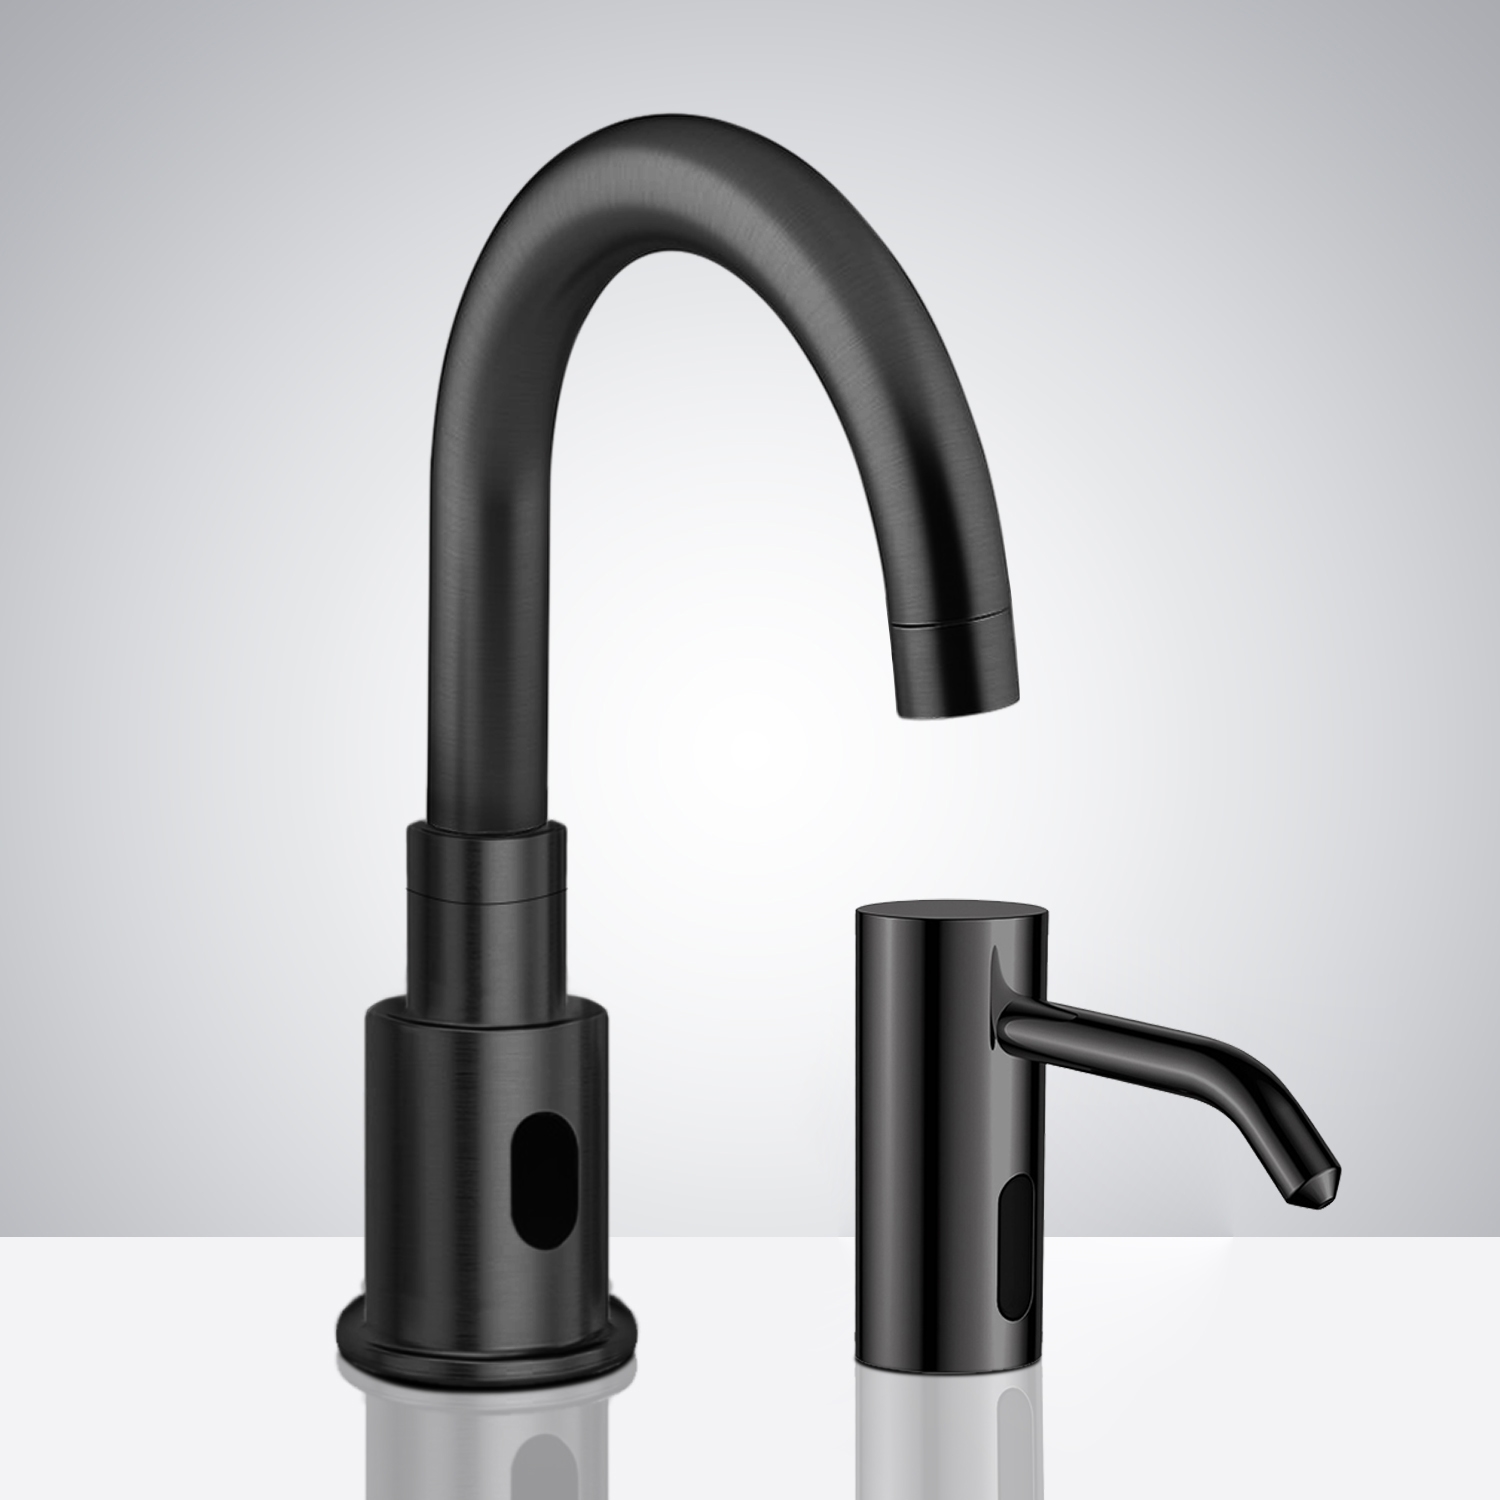 Fontana Verona Black Motion Sensor Faucet, Automatic Liquid Soap Dispenser Set for Restrooms